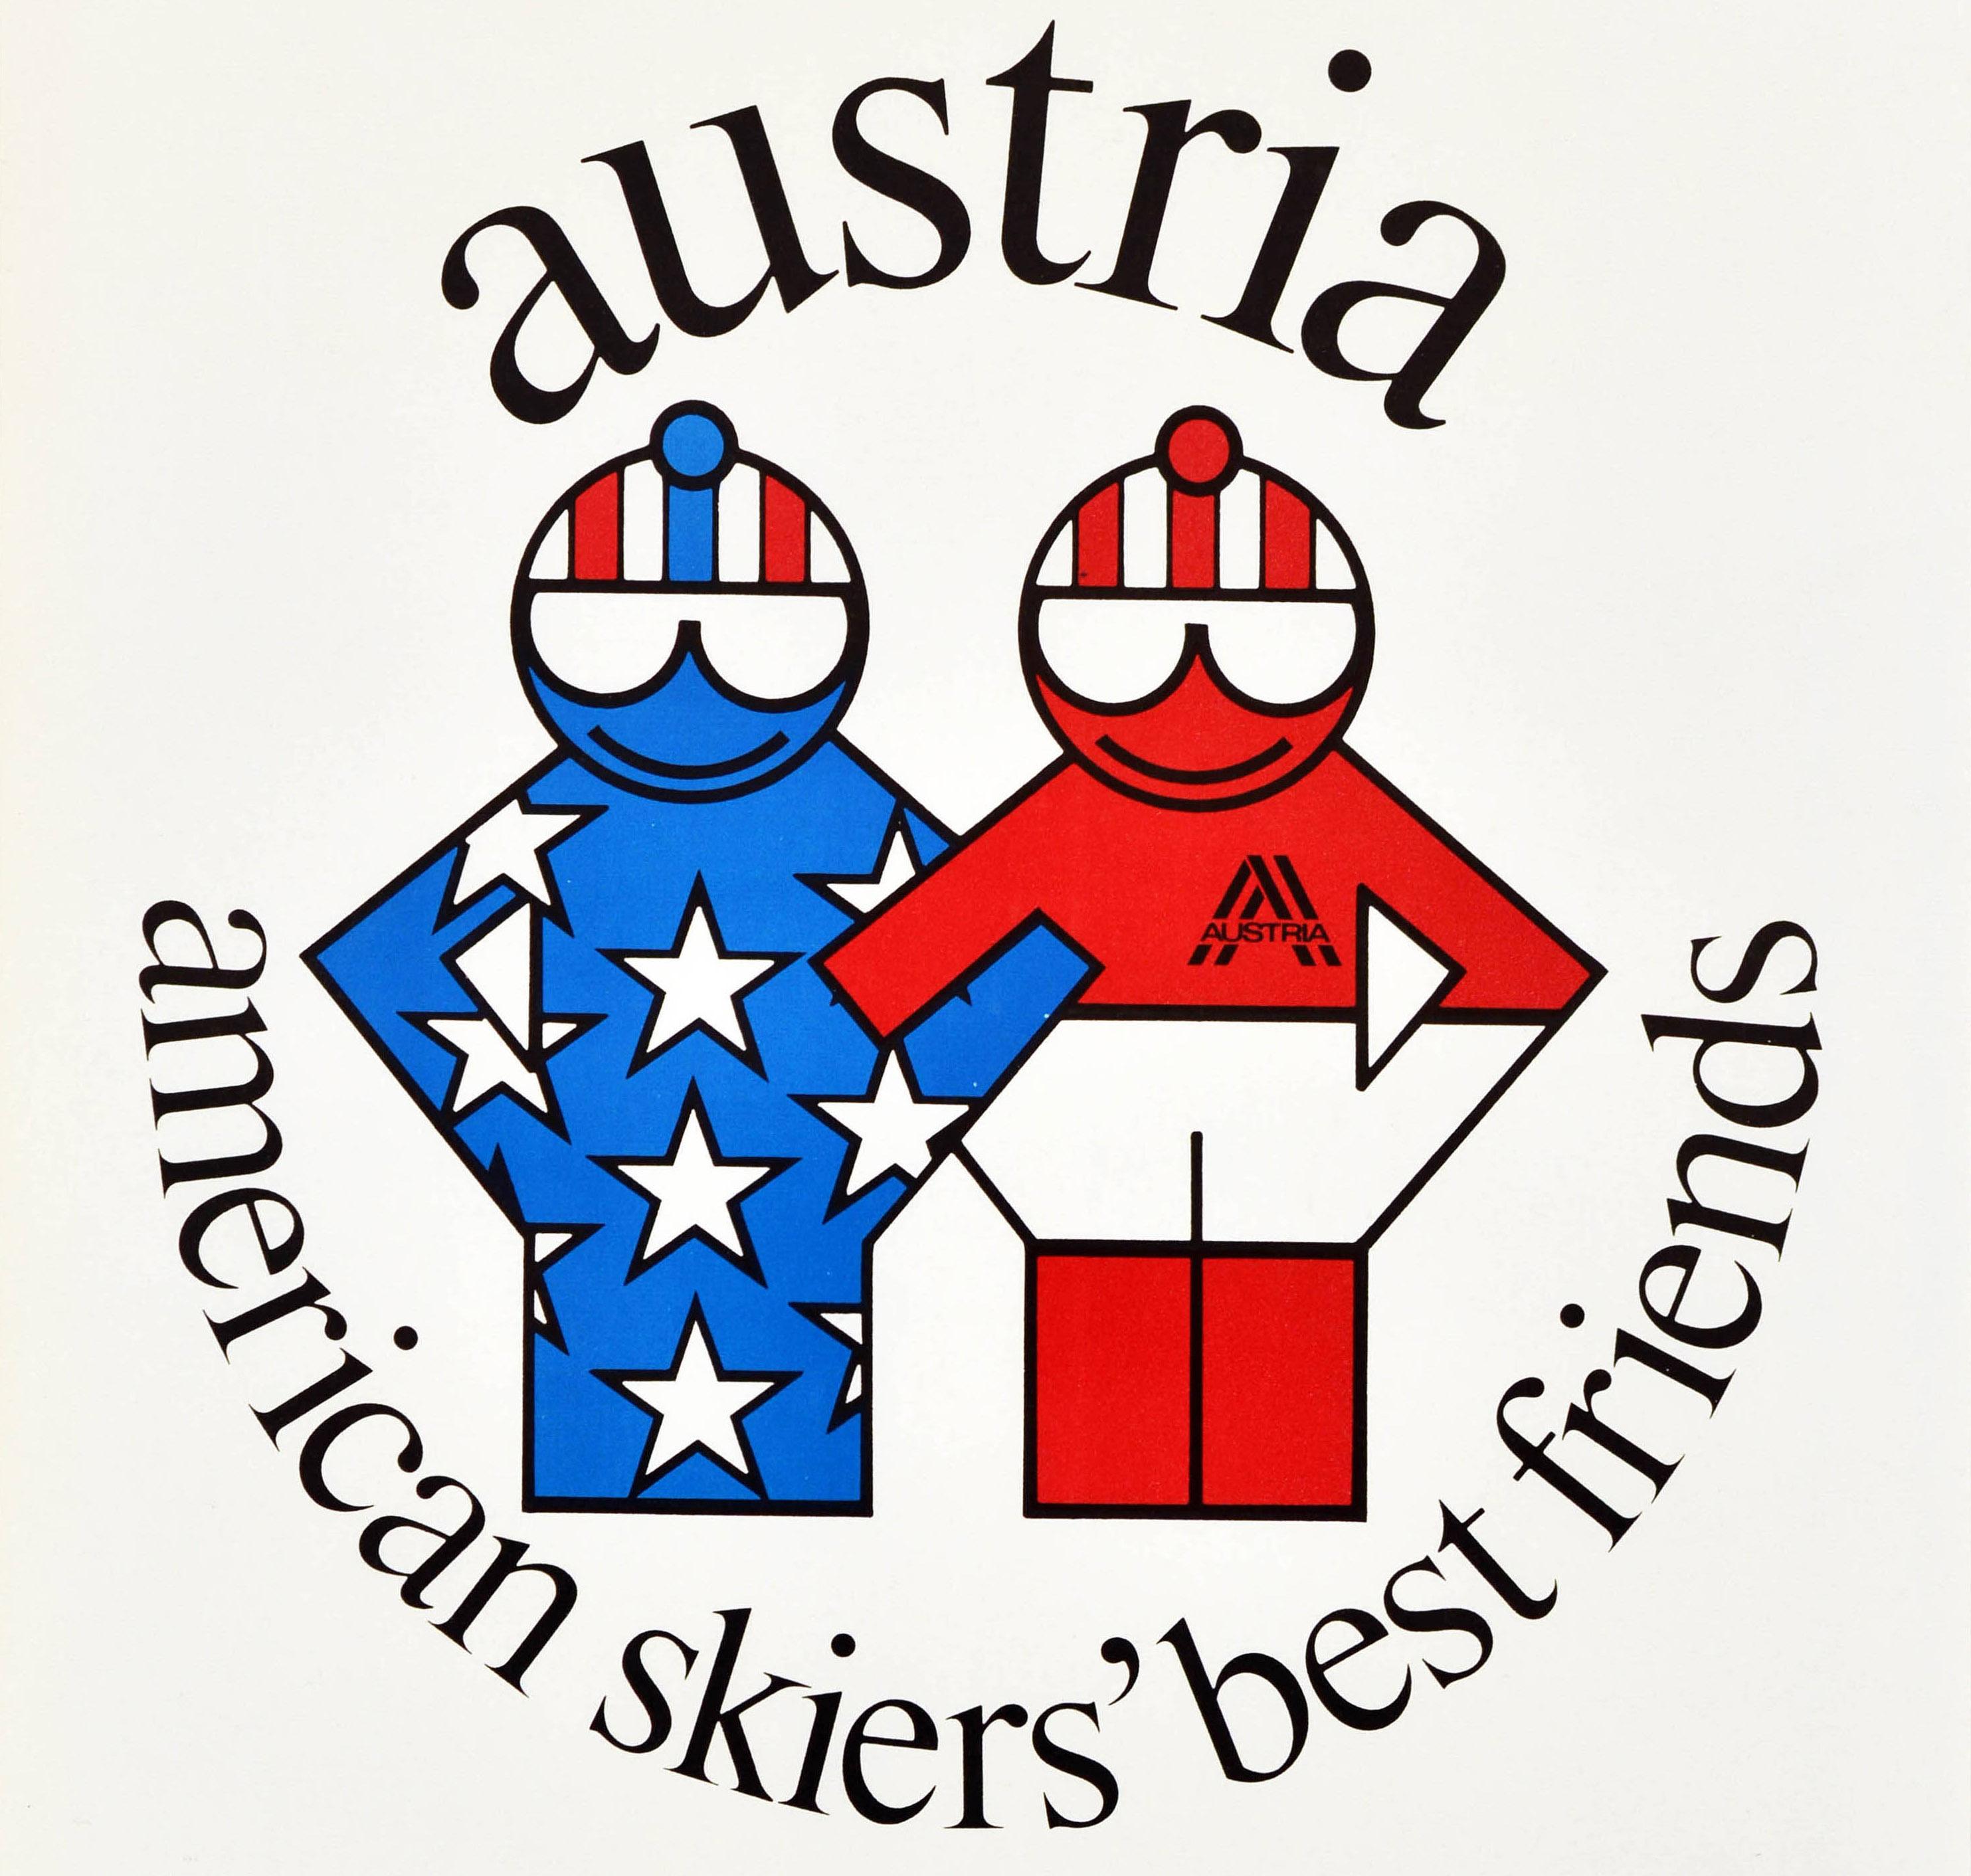 Original-Wintersportplakat für Österreich American Skiers' Best Friends mit einem großartigen Design, das zwei Skifahrer mit verschränkten Armen zeigt, eine Figur mit Sternen und Streifen als Symbol für Amerika und die andere mit roten und weißen